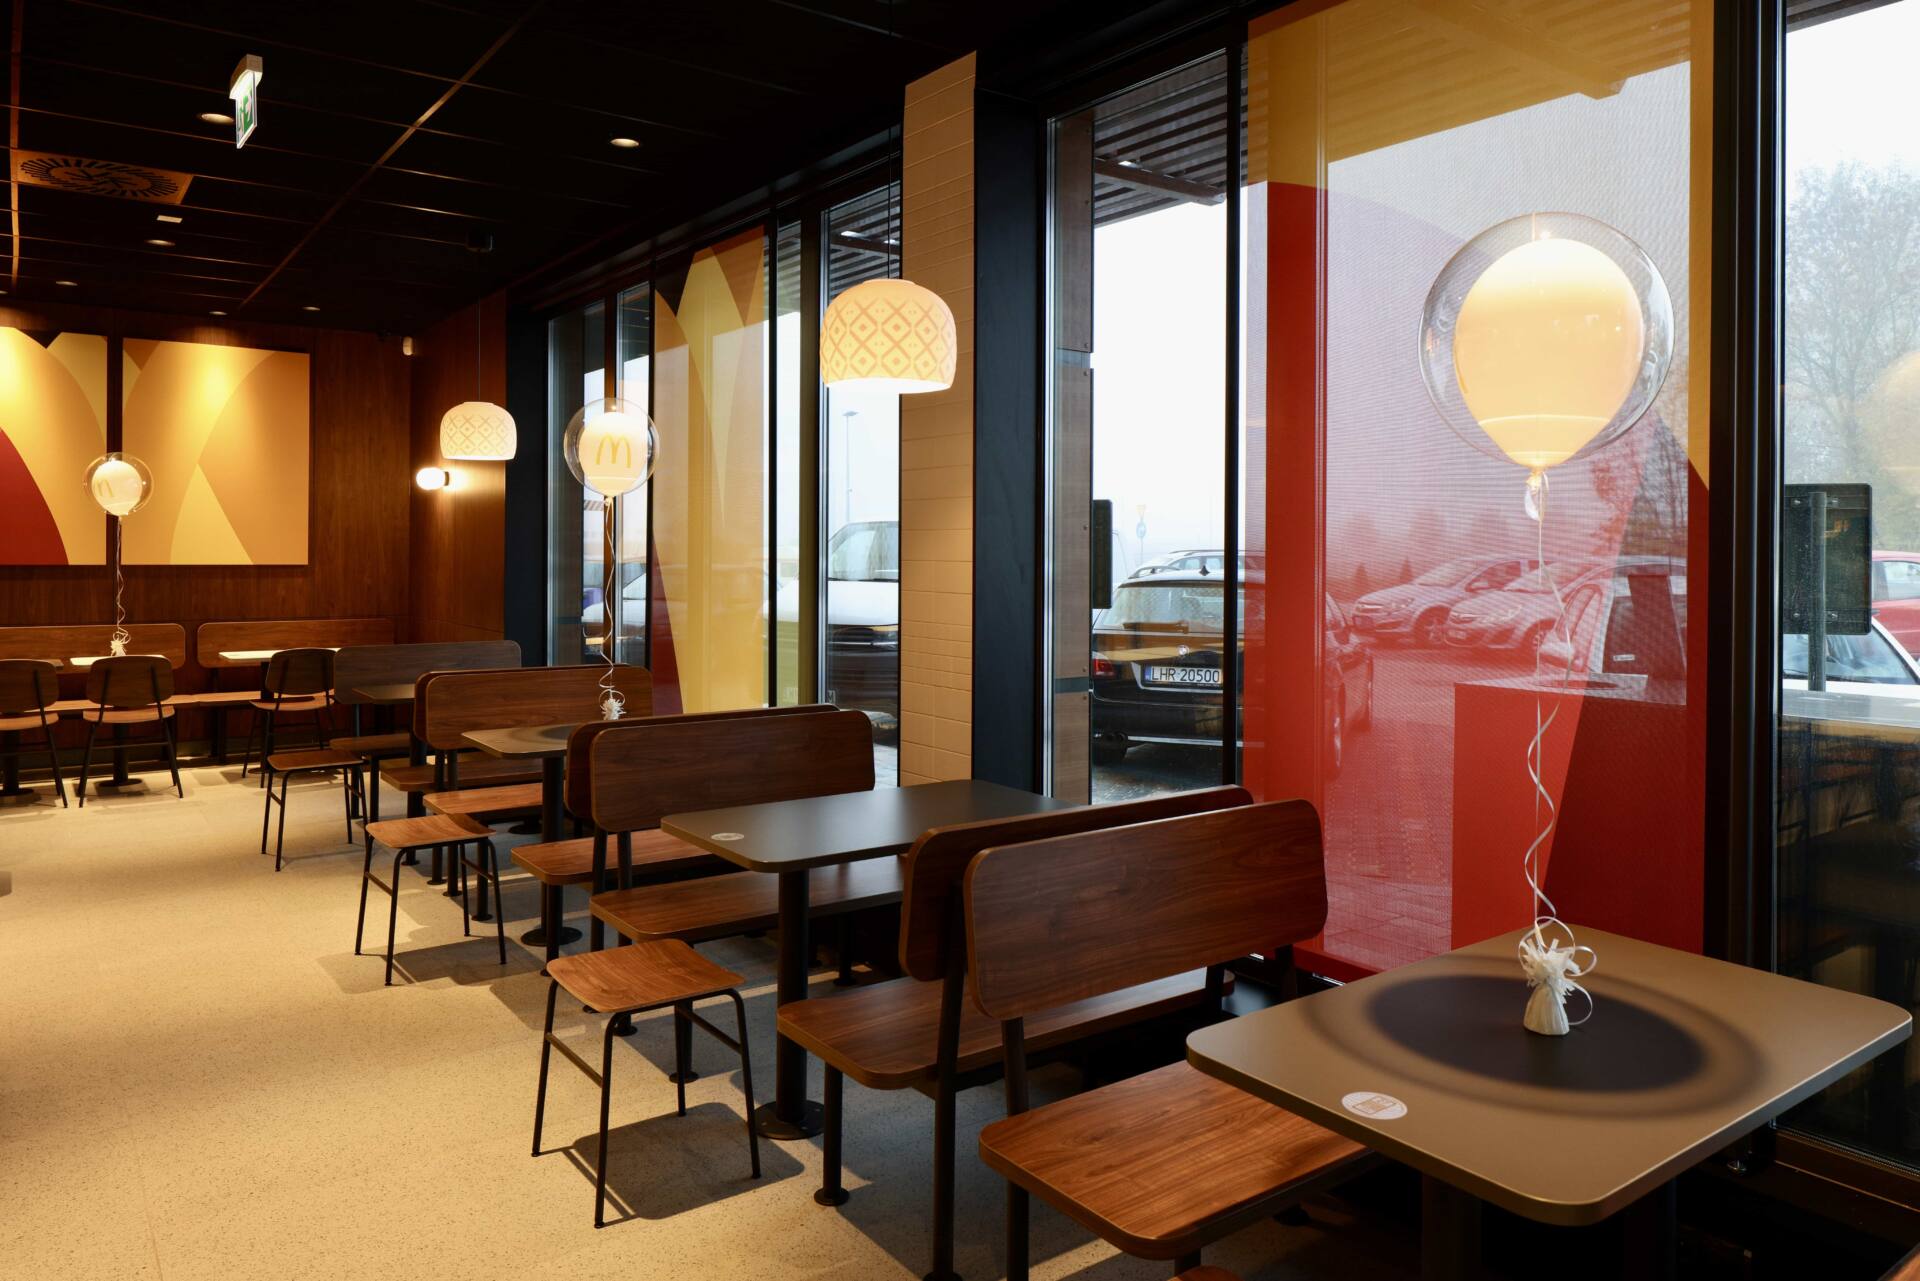 restauracja mcdonalds w hrubieszowie 2 Nowy McDonald’s otwarty! Do każdego zestawu powiększonego będzie dodawana puszka Coca-Coli Zero gratis.